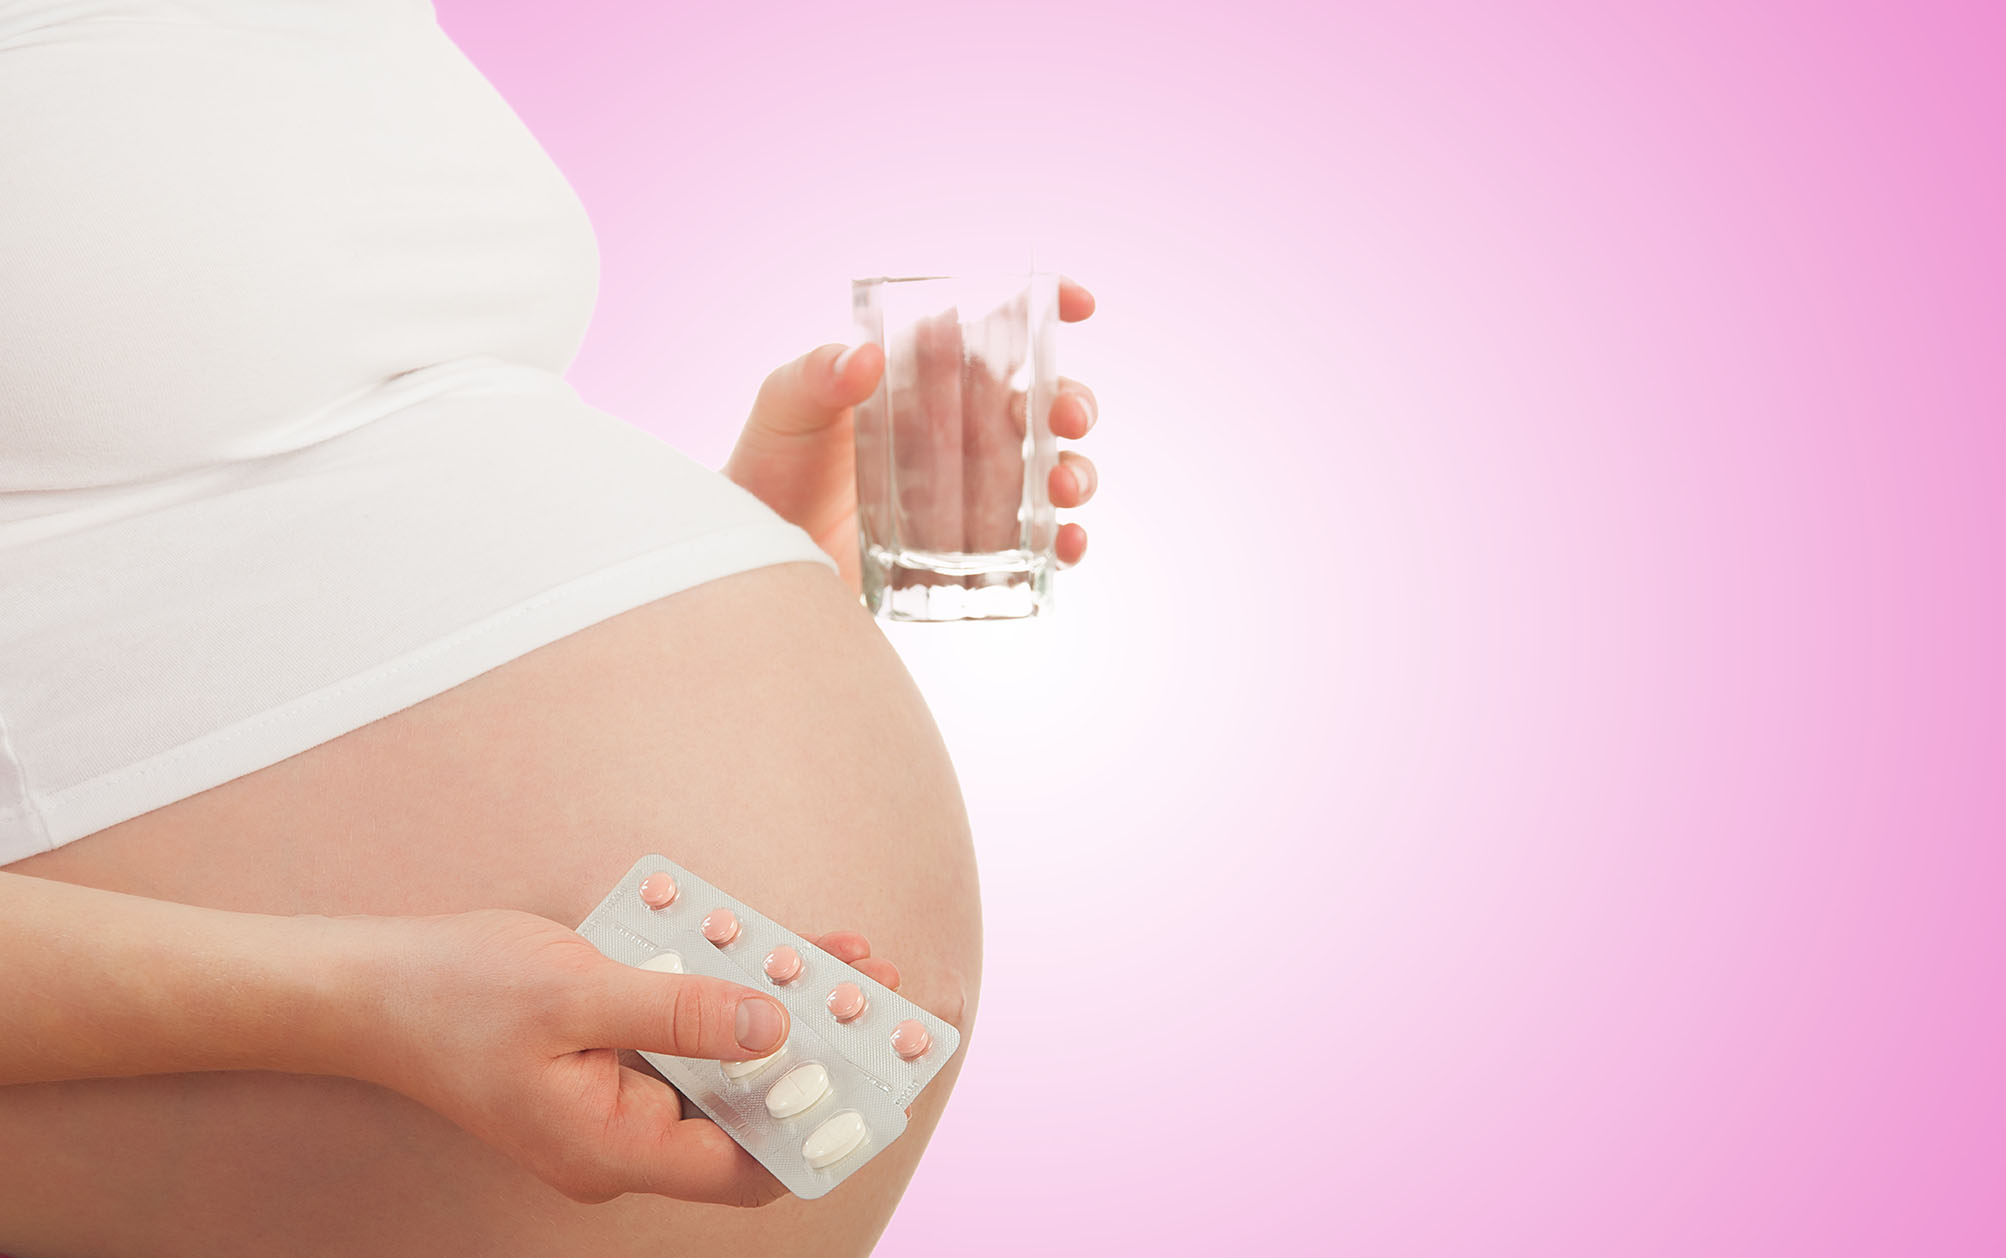 ibuprofeno durante el embarazo